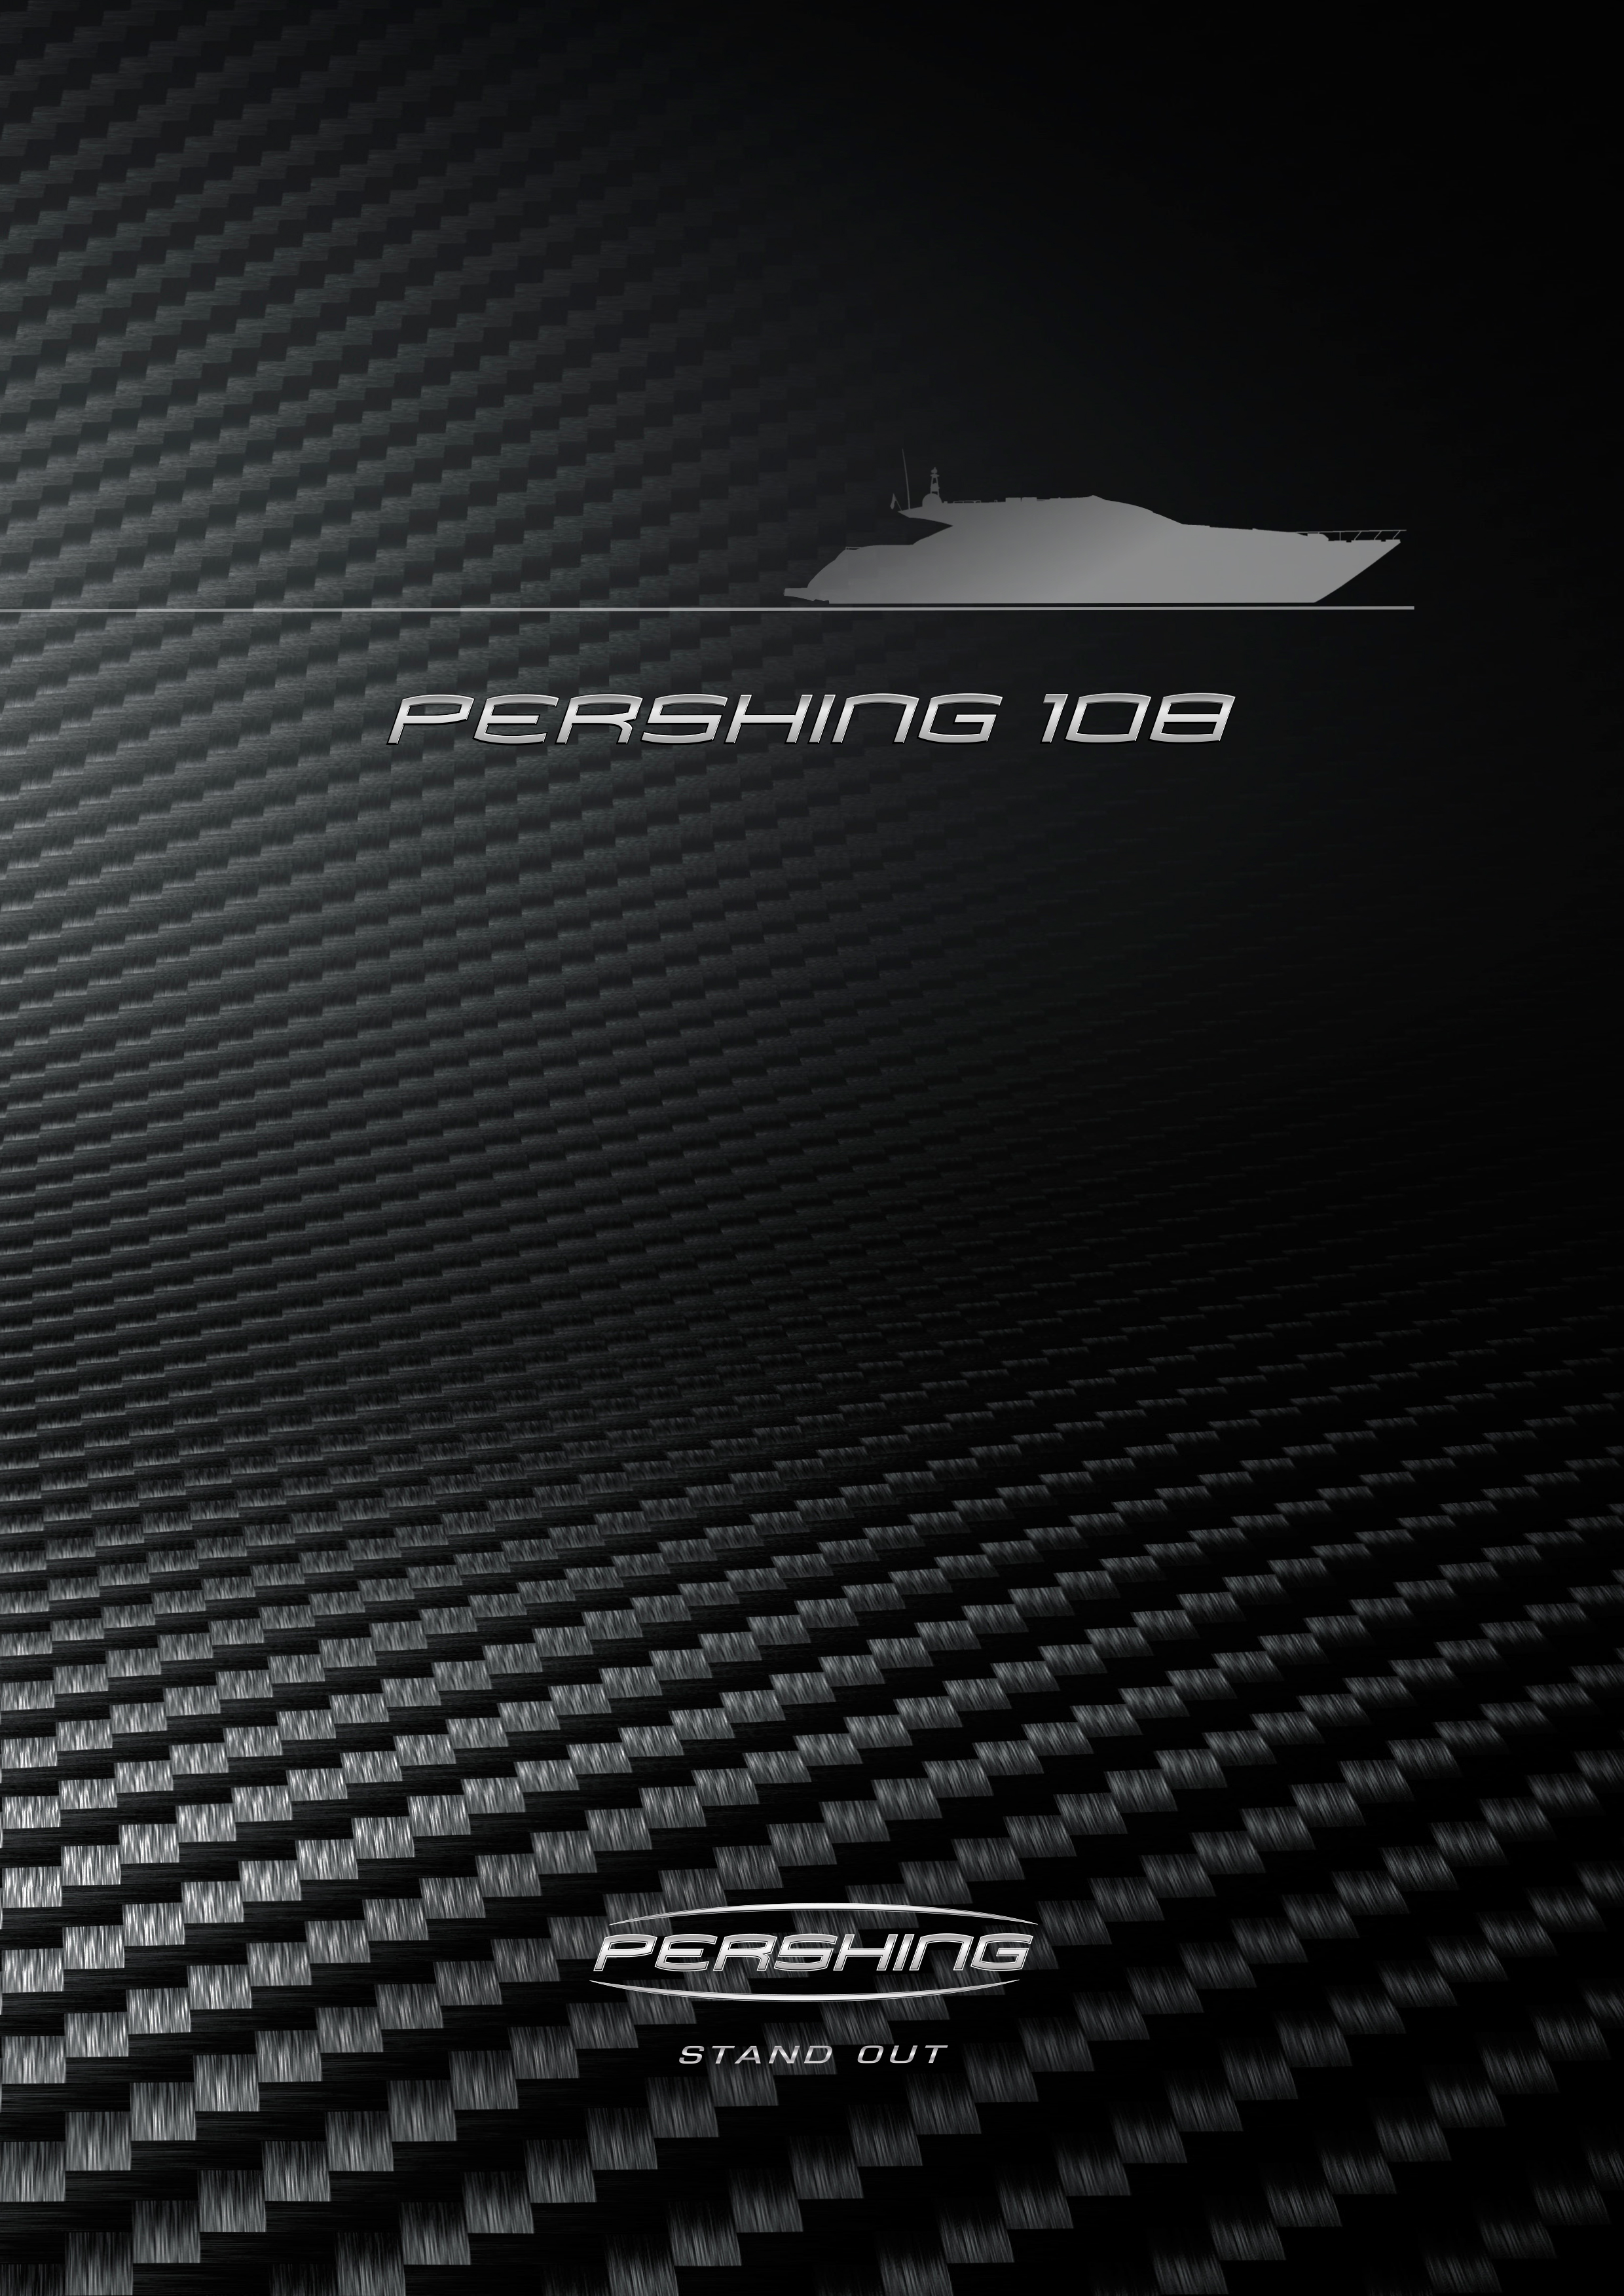 Pershing 108 - StandardEquipment